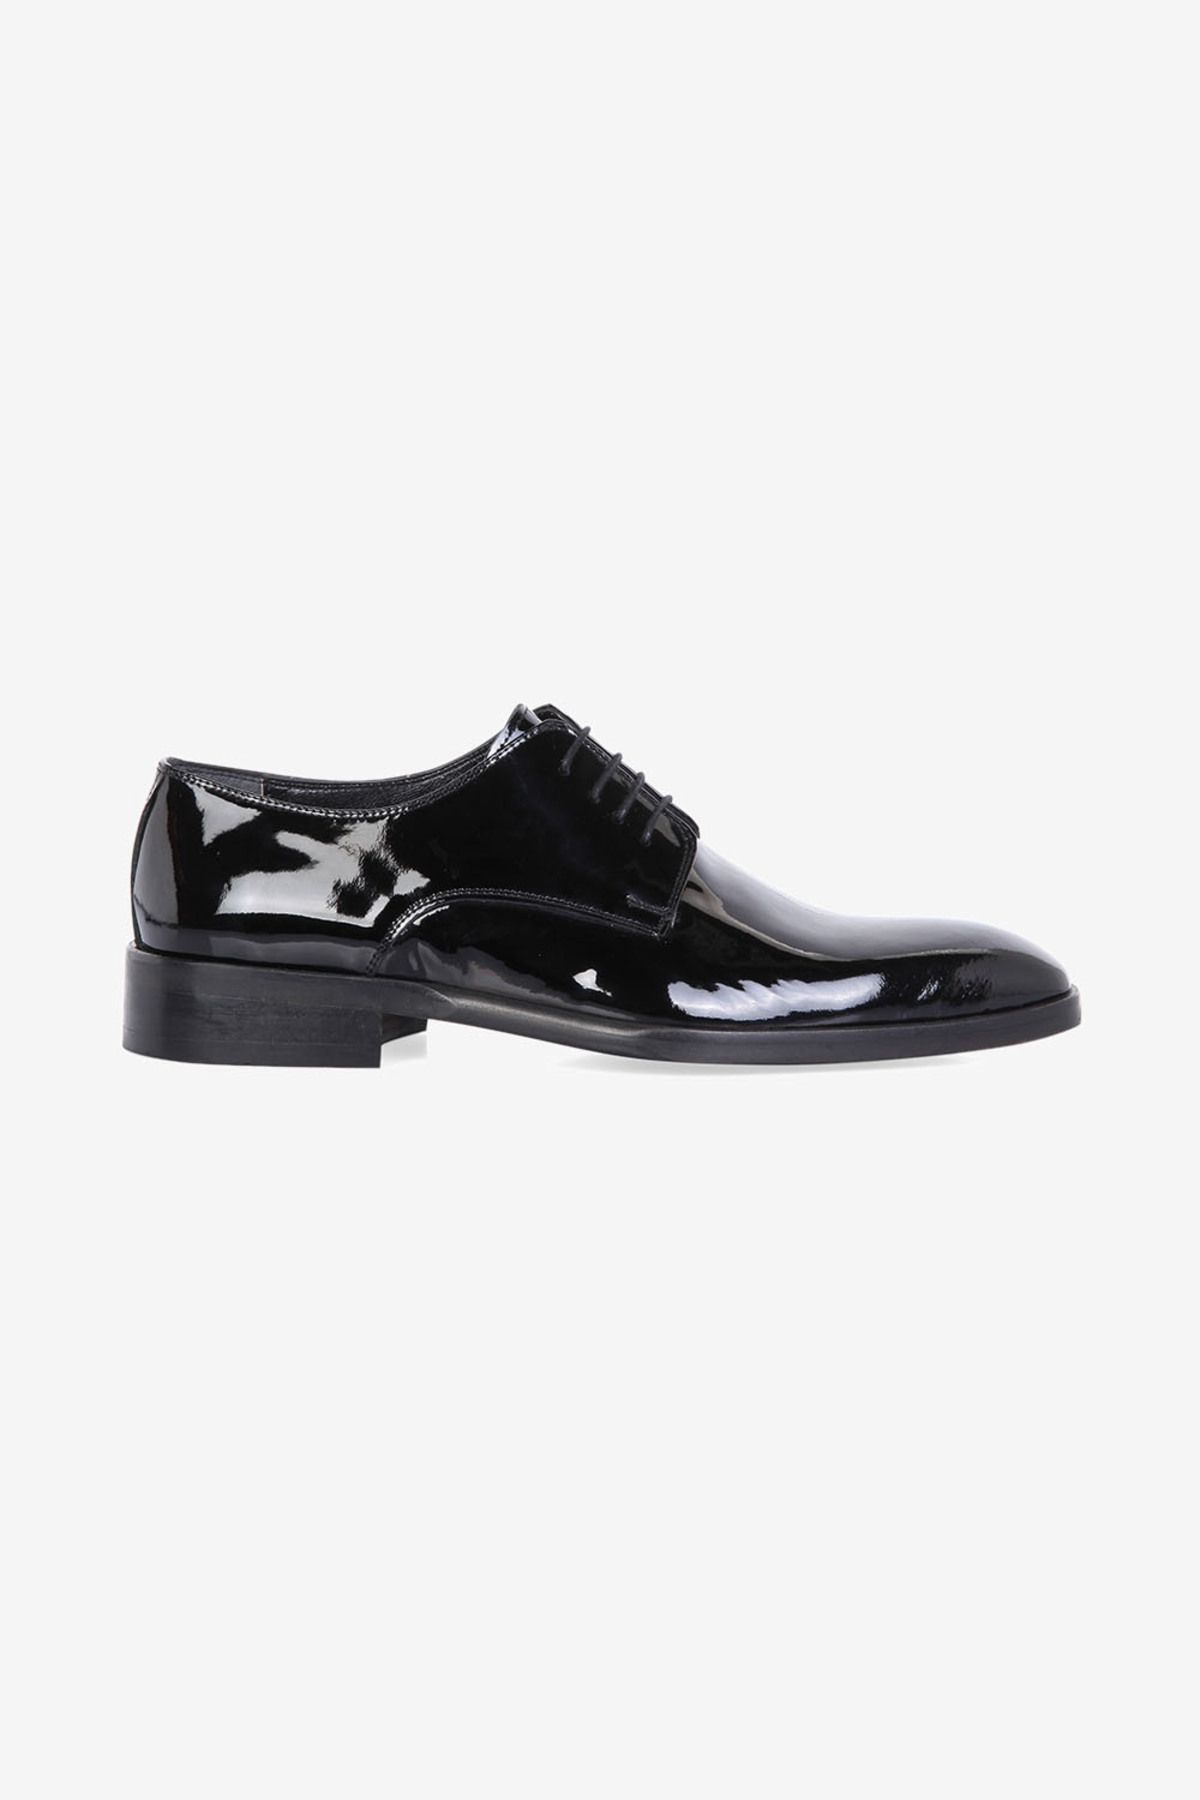 W Collection Siyah Rugan Ayakkabı